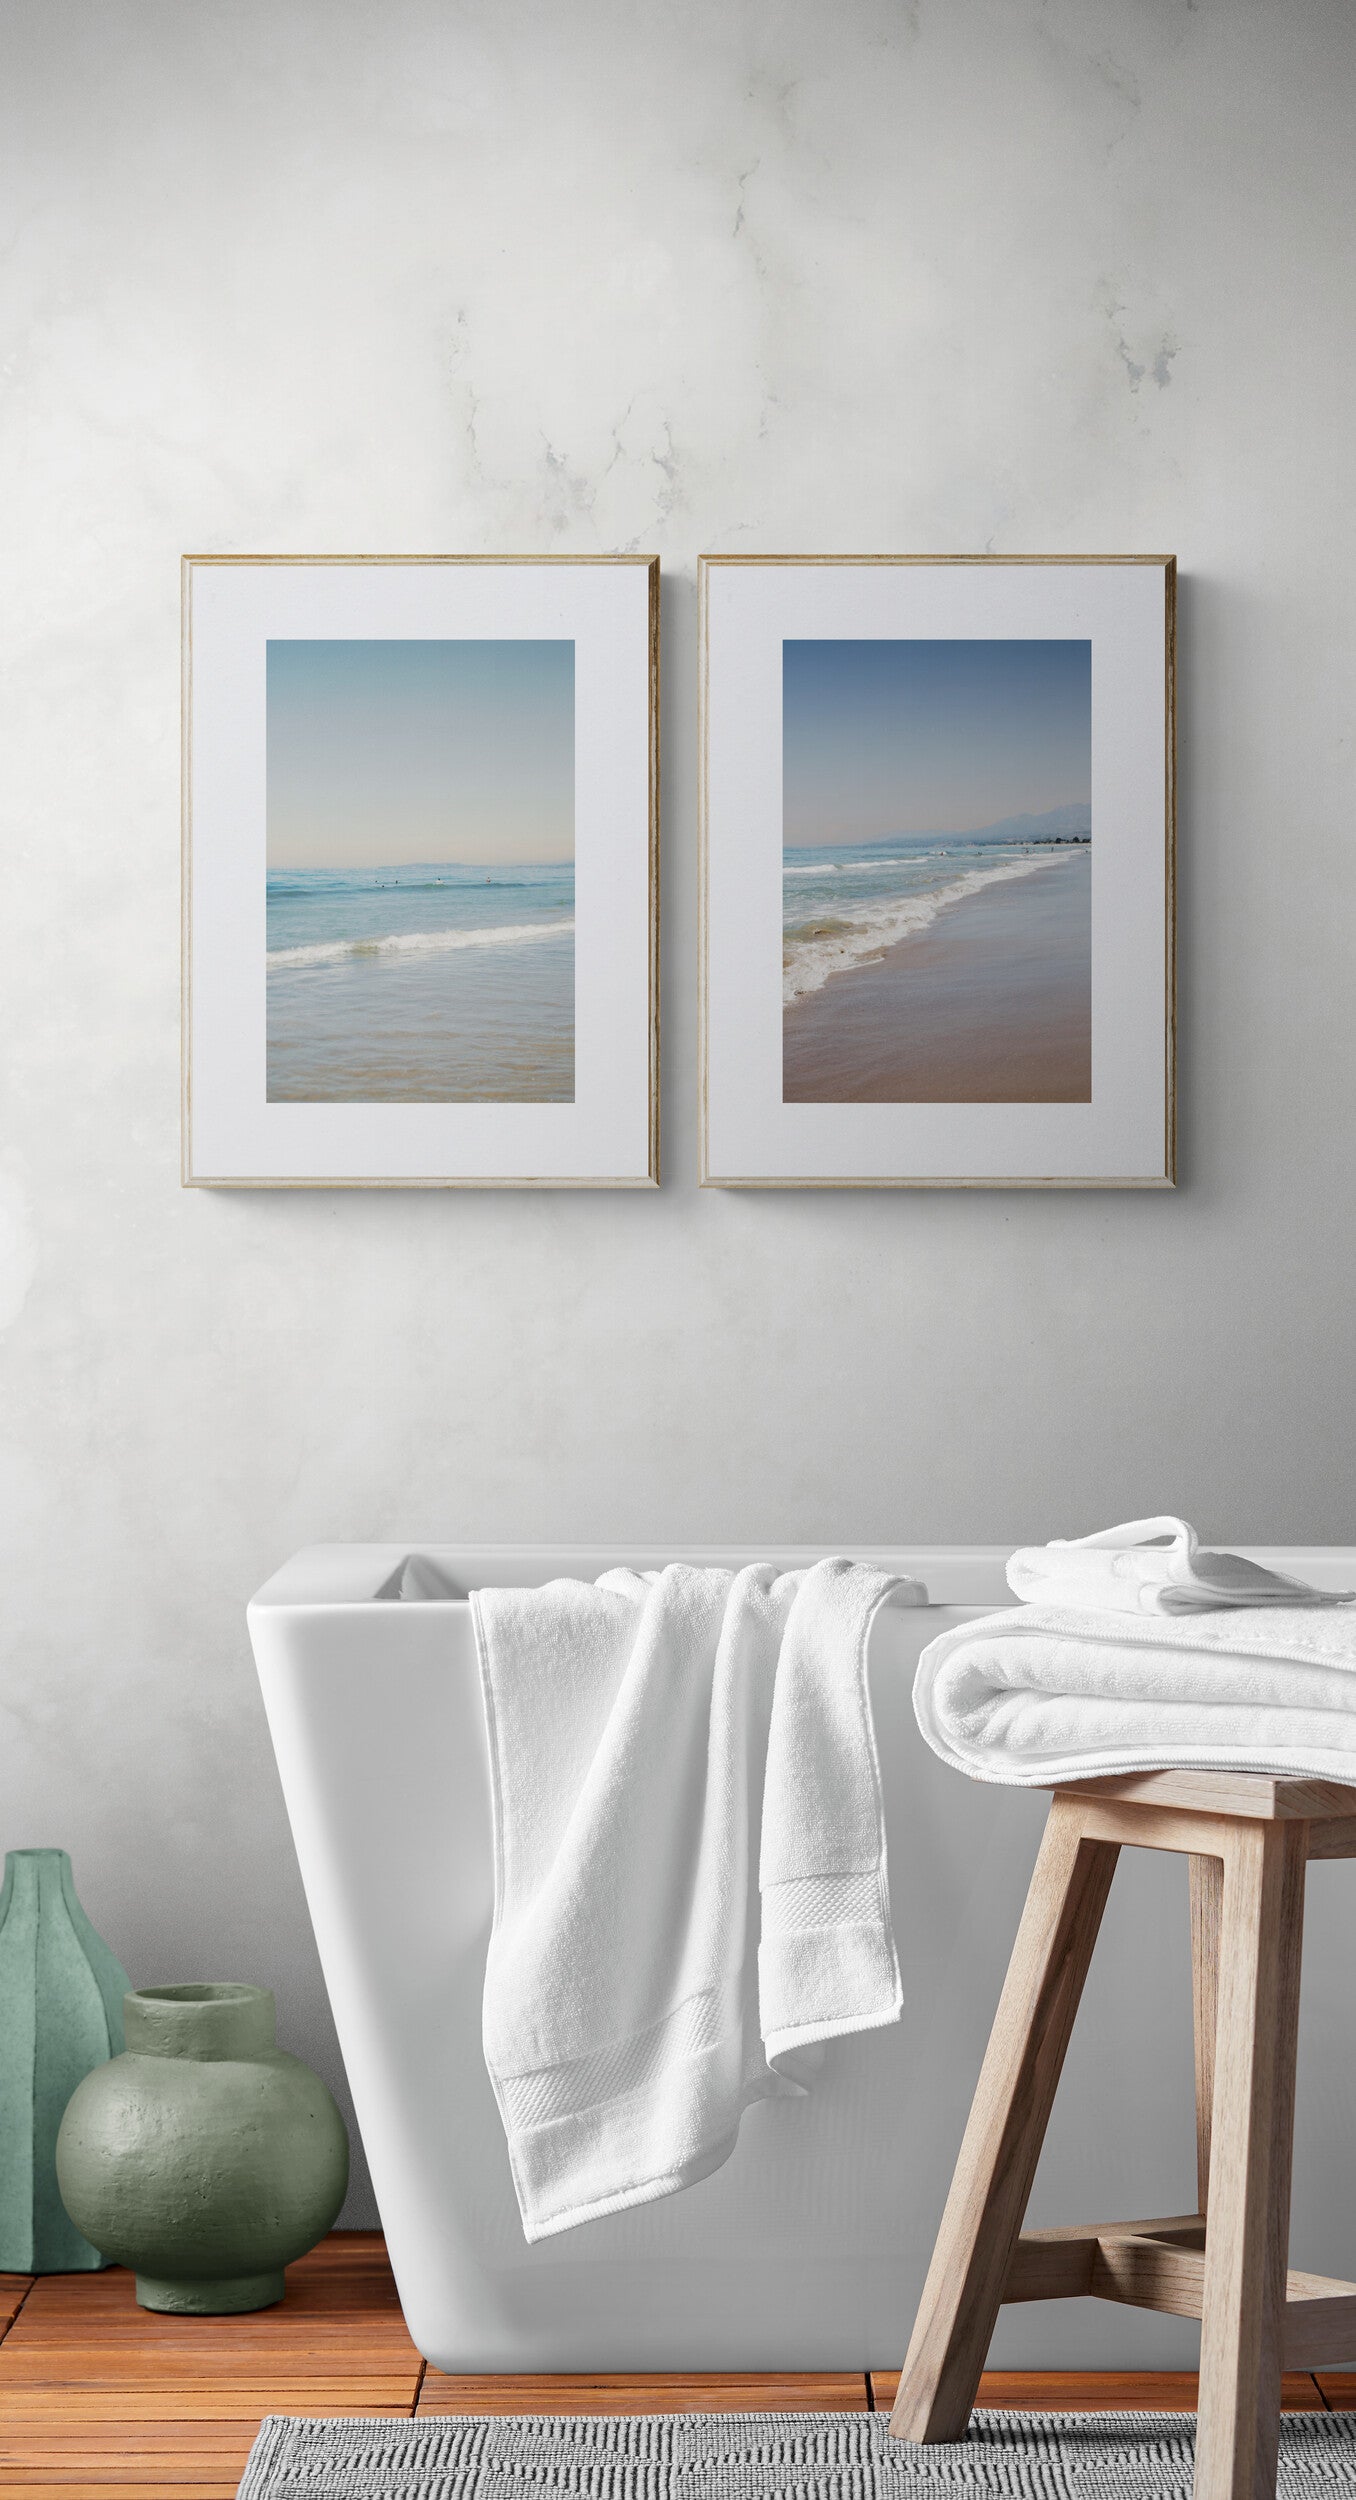 Two photographs of carpinteria state beach california photograph beach as wall art in a bathroom